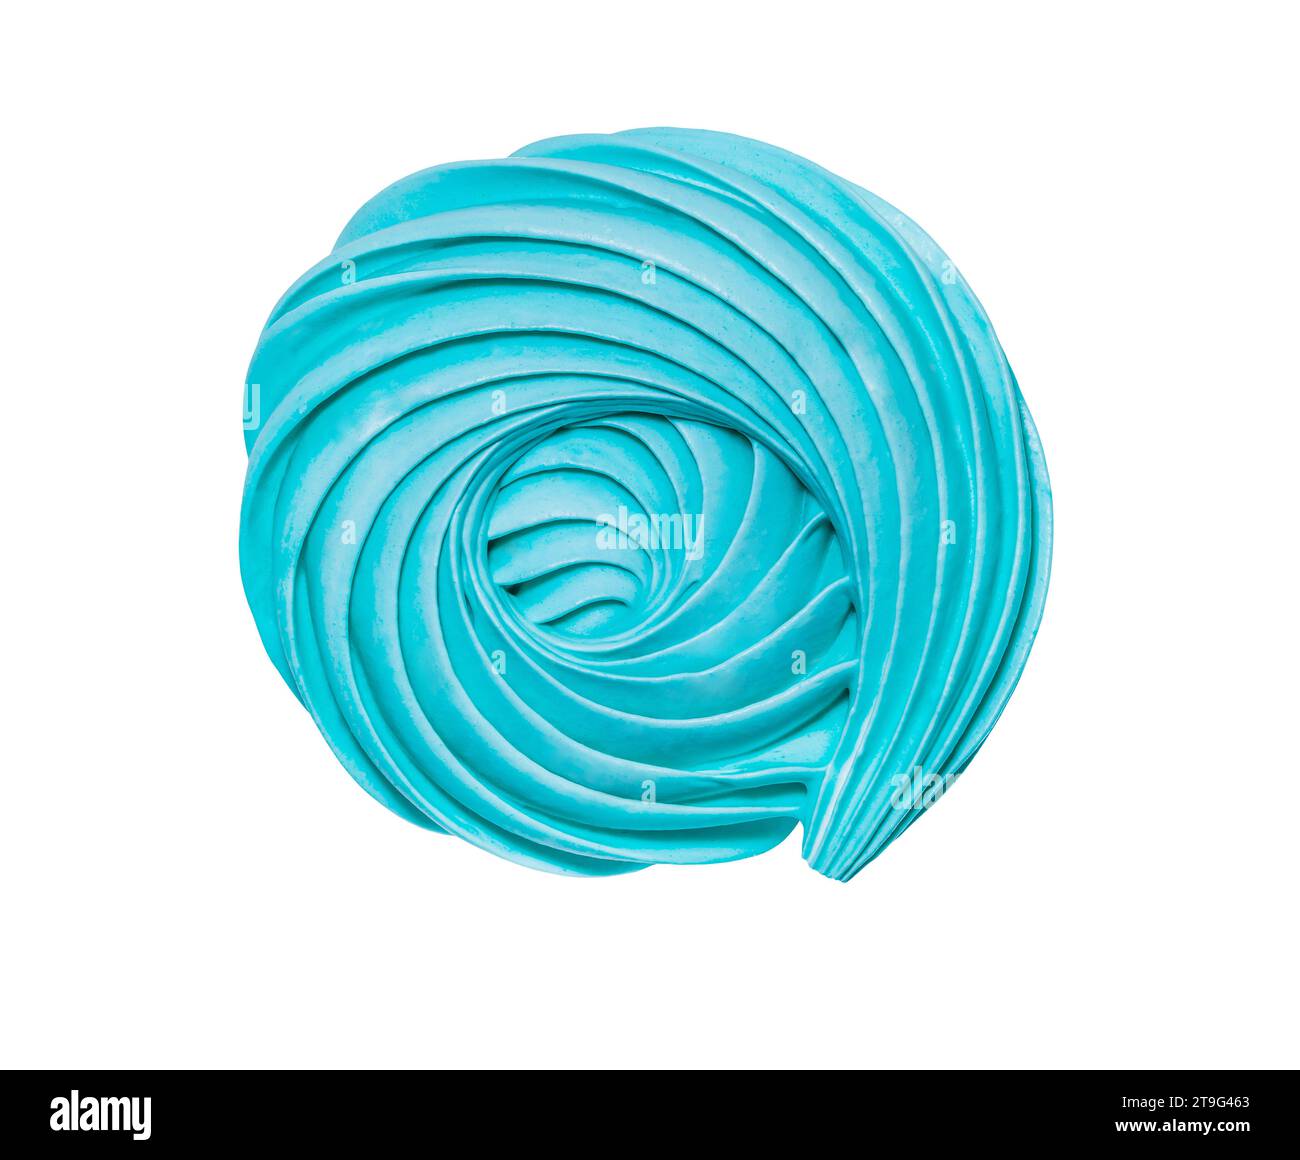 Guimauve meringue bleu spiralé, confiserie sucrée isolée sur fond blanc avec chemin de détourage, gros plan. Banque D'Images